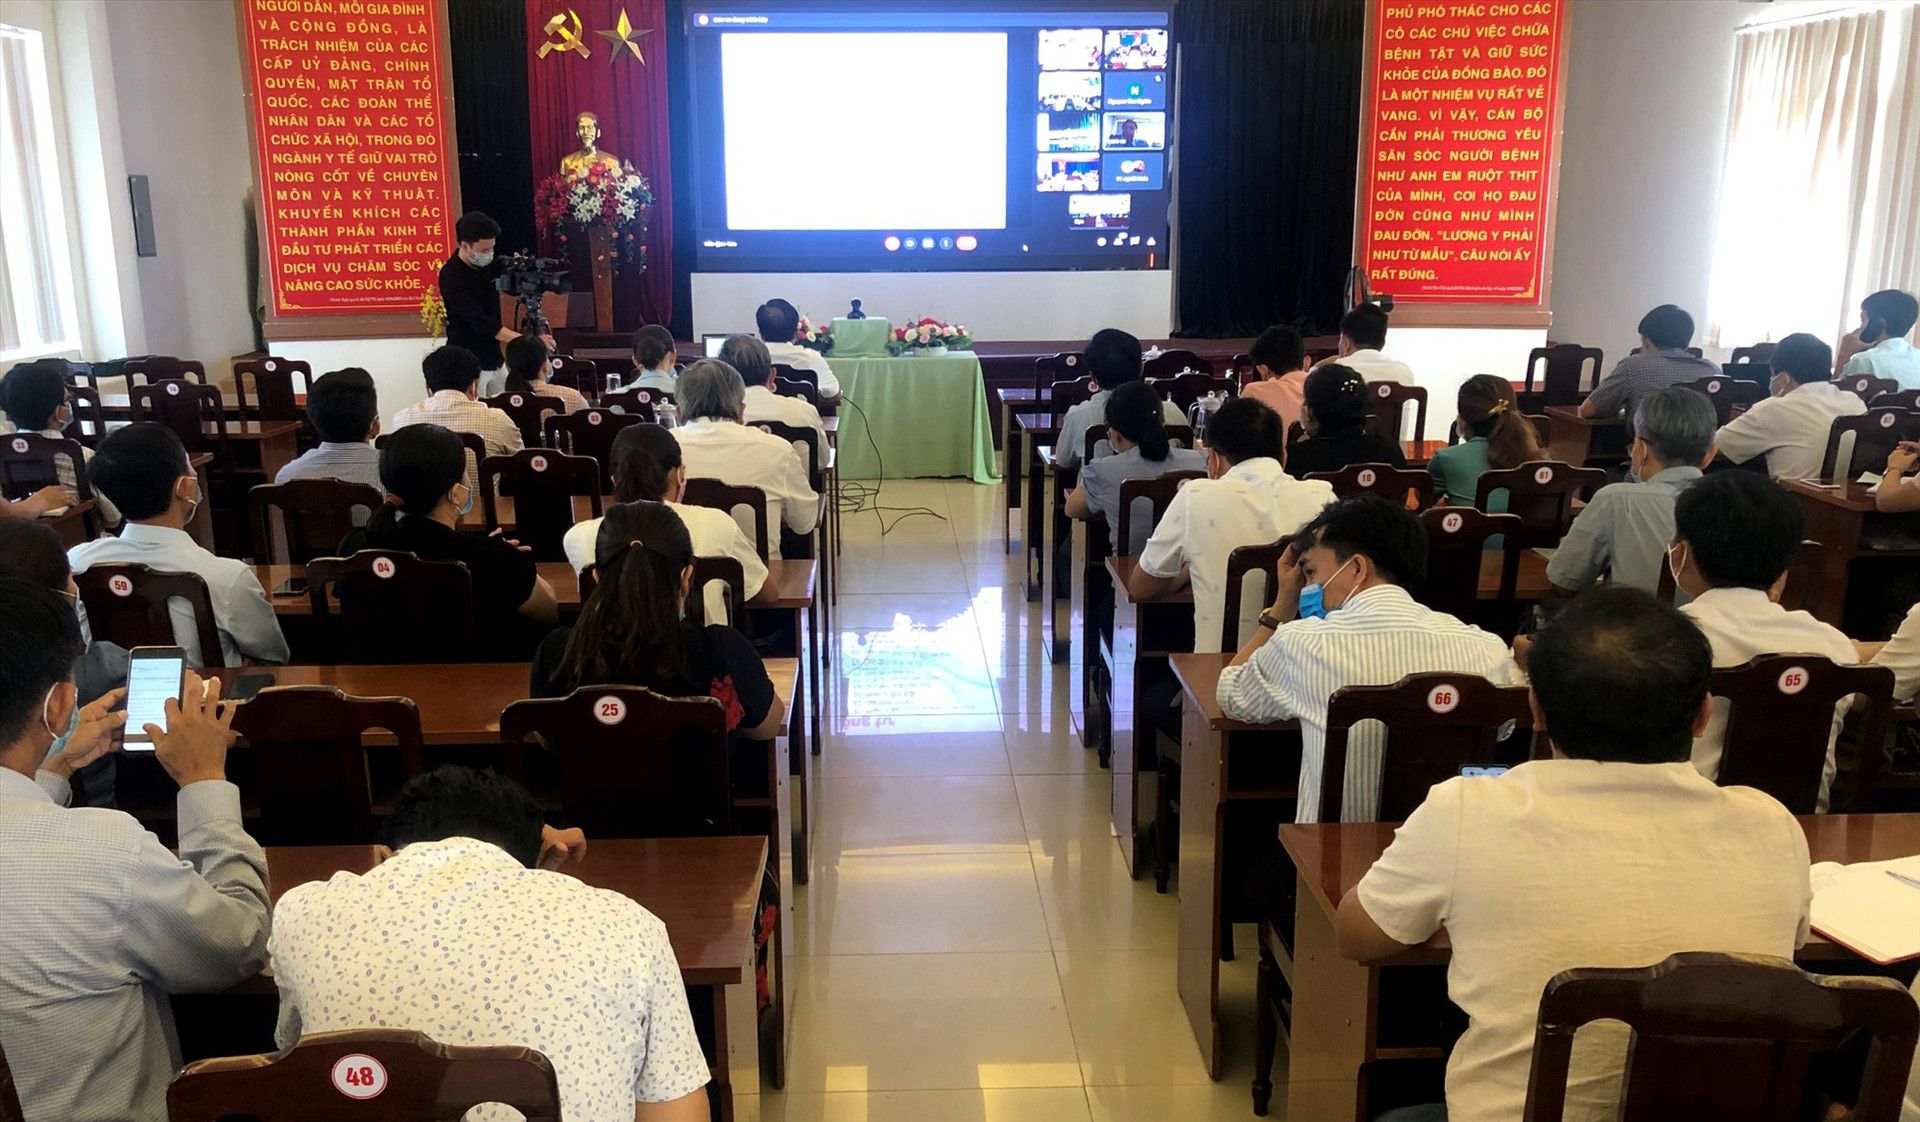 Quang cảnh hội nghị trực tuyến tại điểm cầu Quảng Nam. Ảnh: soyte.quangnam.gov.vn